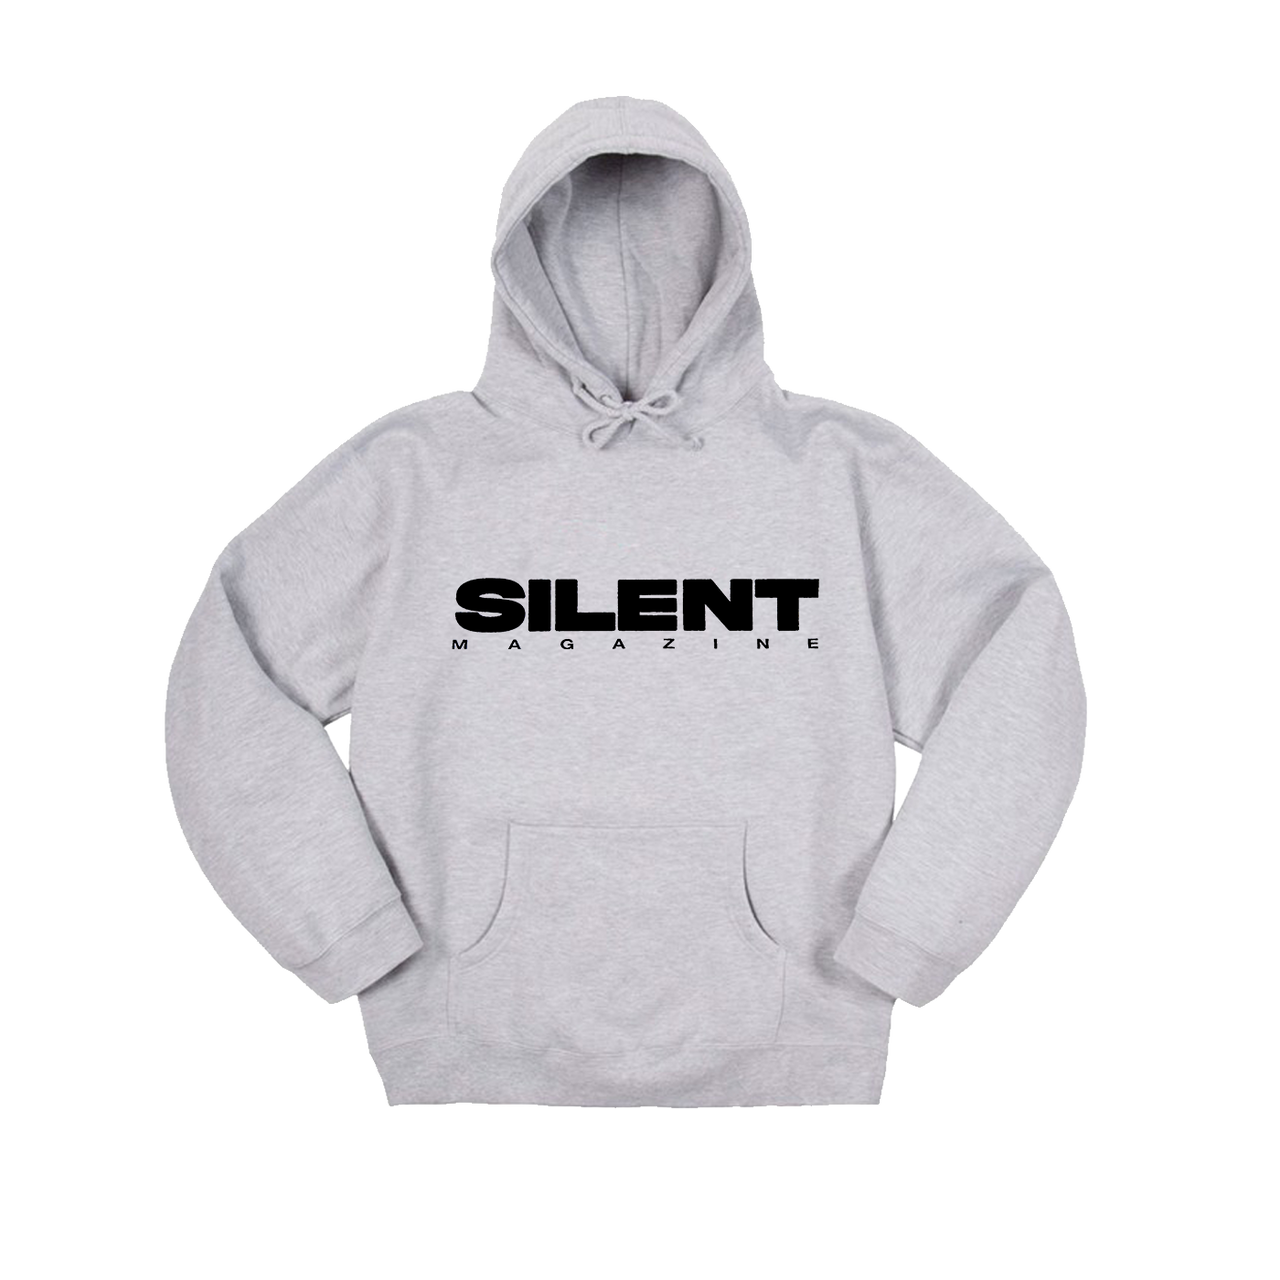 Silent "Standard" Hood